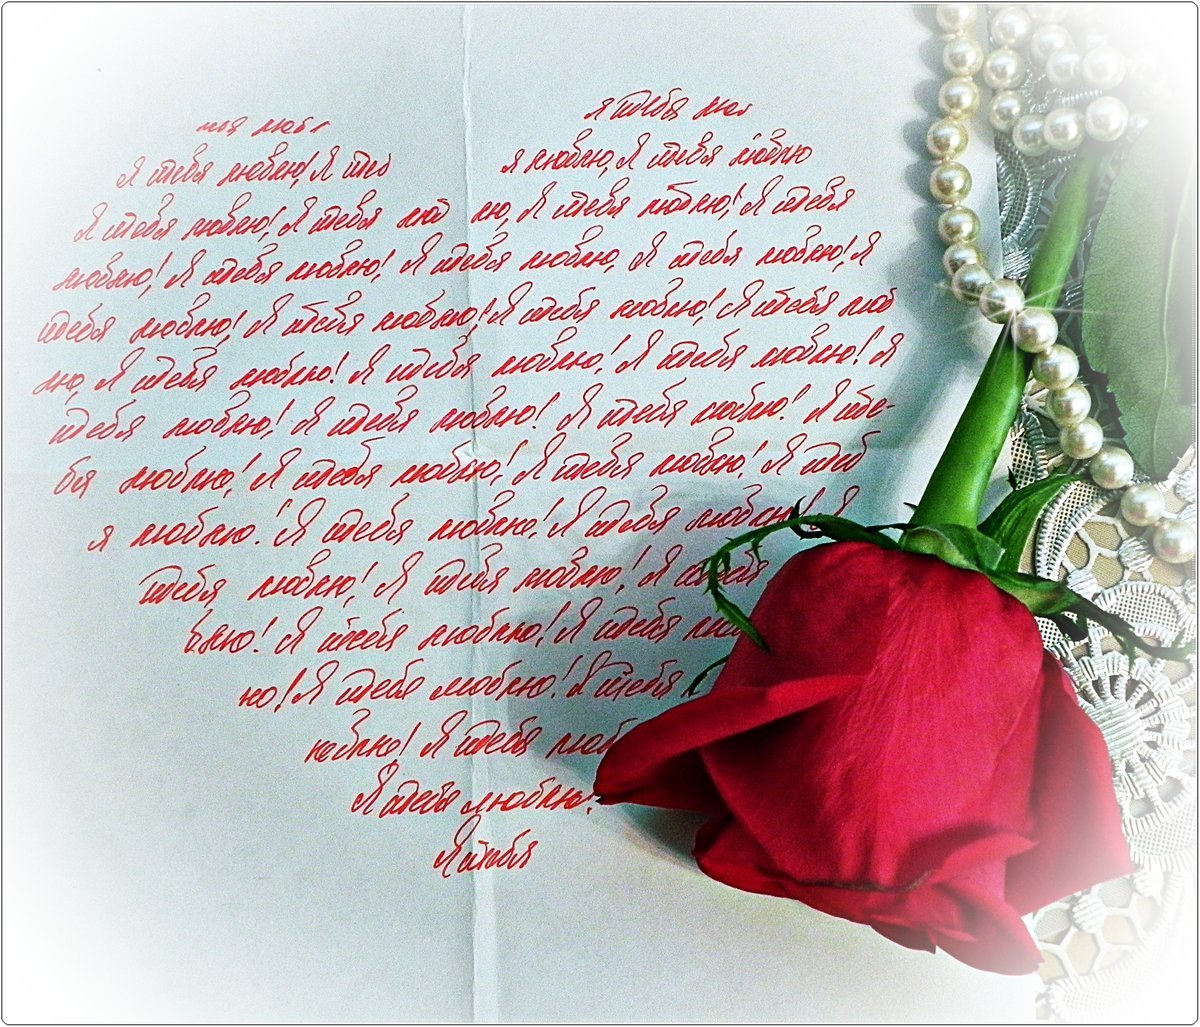 Красивые стихи девушке с цветами